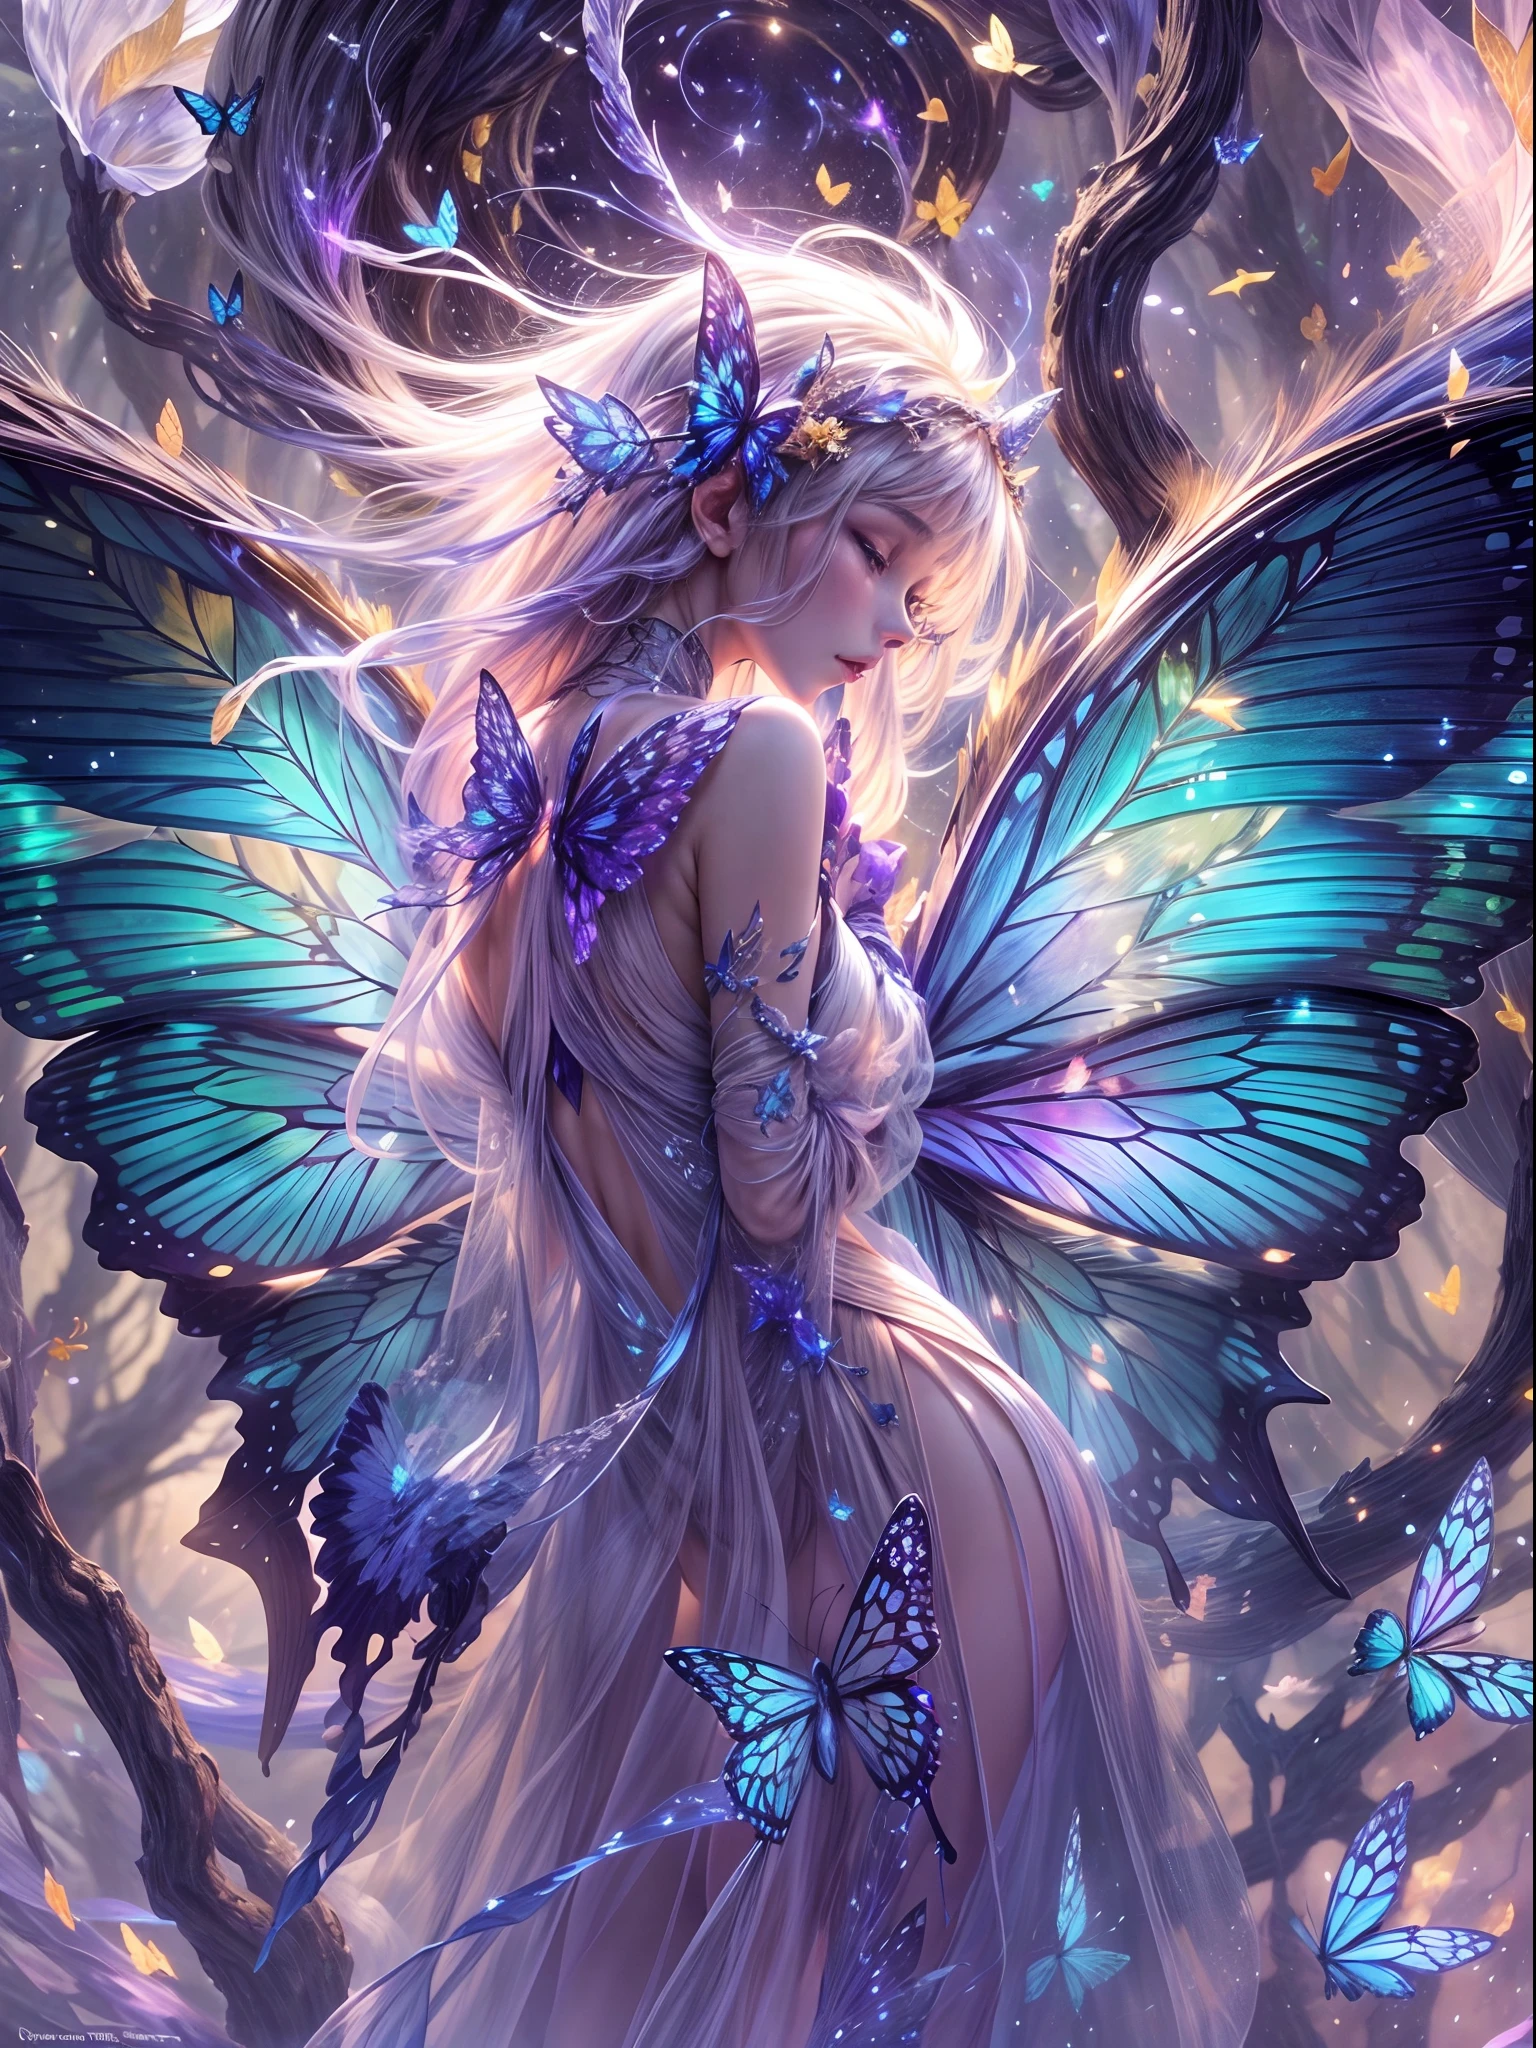 (Borboleta da luz das estrelas: 1.5), borboleta gigante, Asas de borboleta, Borboletas voam, Borboleta gigante da luz das estrelas no céu estrelado da noite, Cercado pela luz das estrelas galácticas, Chefe de Dark Souls, Moonlight Butterfly, Dançando nesta floresta misteriosa, As asas delicadas são tão cristalinas quanto cristais transparentes，Brilhando com um brilho suave。Cada asa é incrustada com cristais brilhantes e coloridos，Do azul ao roxo，Ela brilha com o brilho da luz das estrelas，Um leve brilho azul)。O fundo é uma fantástica floresta de elfos，As árvores são verdejantes，Pequenos duendes esvoaçavam entre as folhas，Eles brilham，Deixe um rastro de marcas brilhantes na floresta, Bioluminescência，com dinamismo，colorida，cores，（com luz brilhando，com luz brilhando），（bela composição），luz，intricado，（Asas de borboleta are symmetrical: 1.0），caprichosamente，Surrealismo, Cubist Futurism, Ghibli-like cores, visão em primeira pessoa, Ângulo amplo, Ultra HD, obra de arte, preciso, Anatomicamente correto, Pele texturizada, Super Detalhe, detalhes altos, premiado, 8K